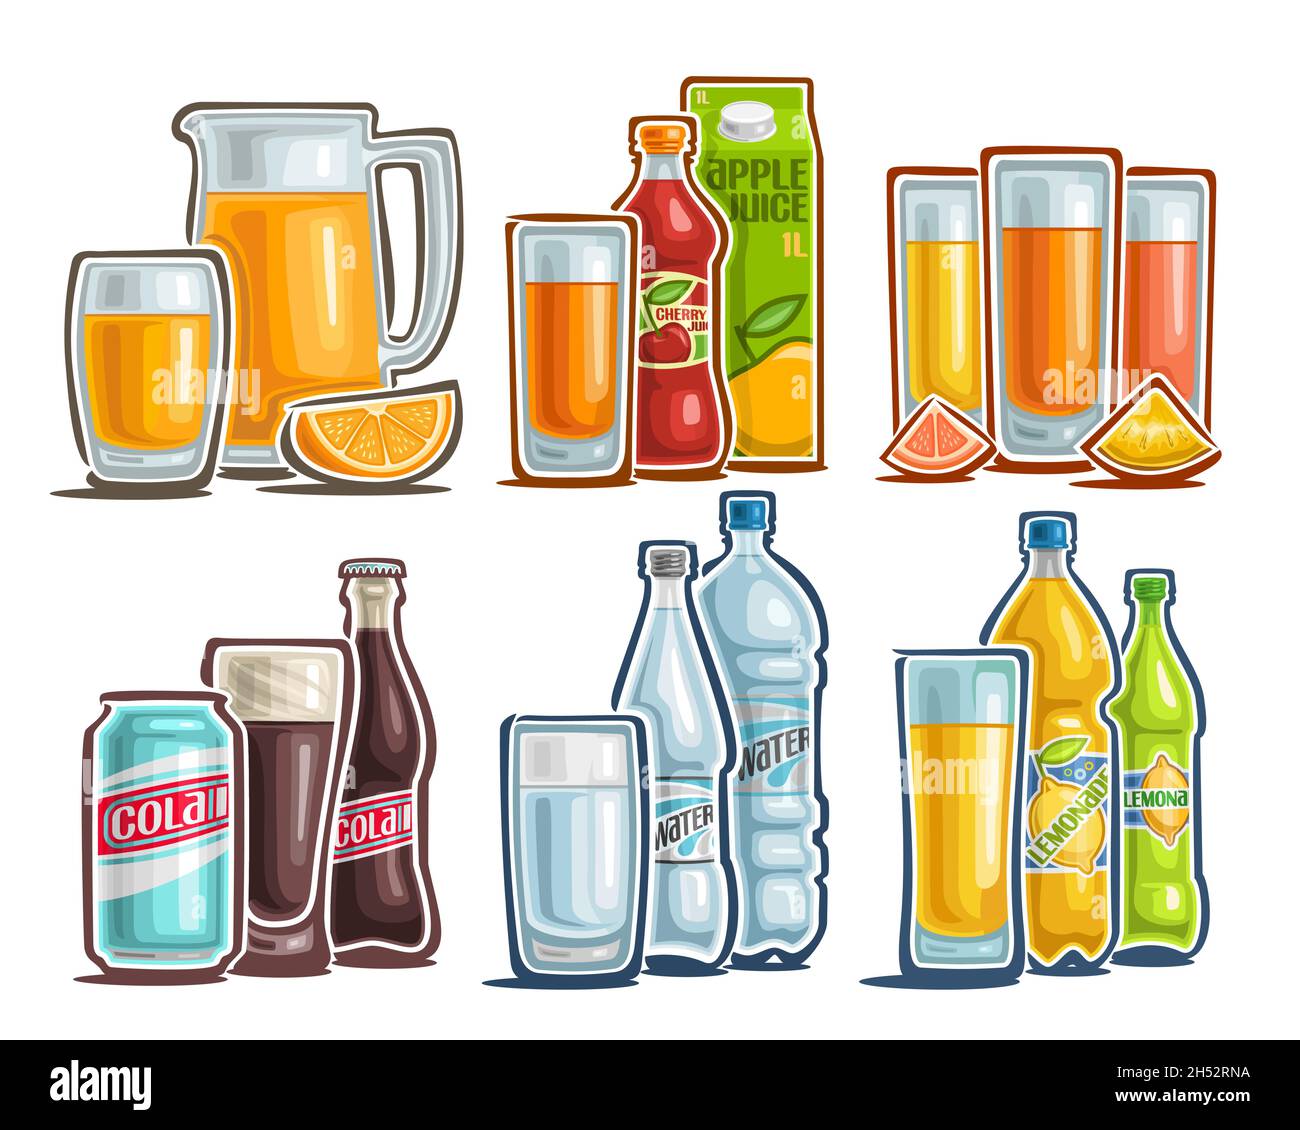 Vector Getränke-Set, Sammlung von ausgeschnittenen Illustrationen Orangensaft, natürliches Getränk in Kartonverpackung, Stillleben mit geschnittenen Früchten, Cartoon-Design Stock Vektor